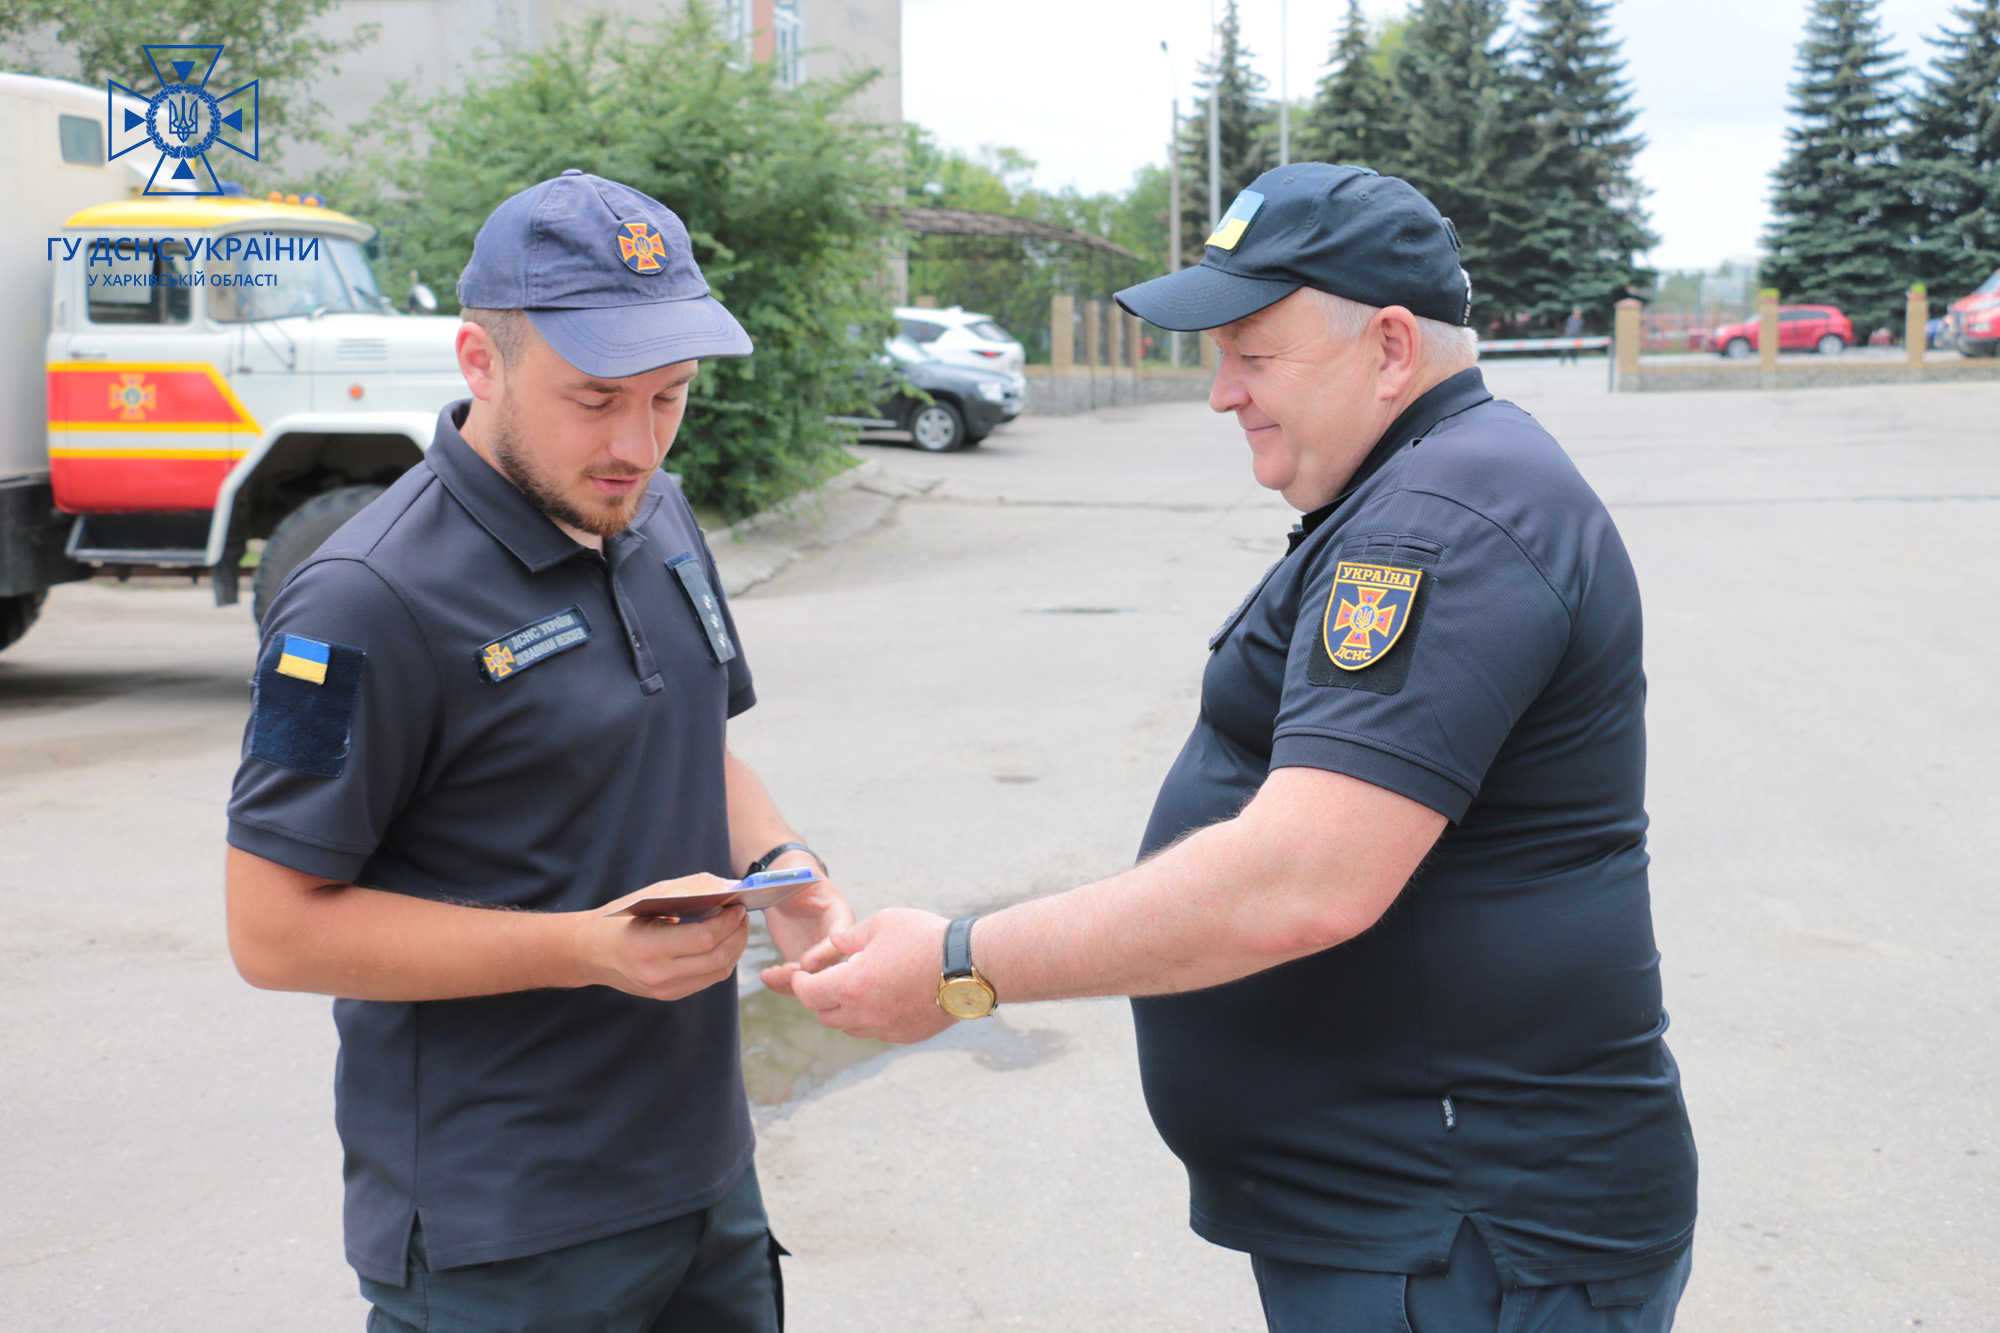 Награждение спасателей в Харькове 3